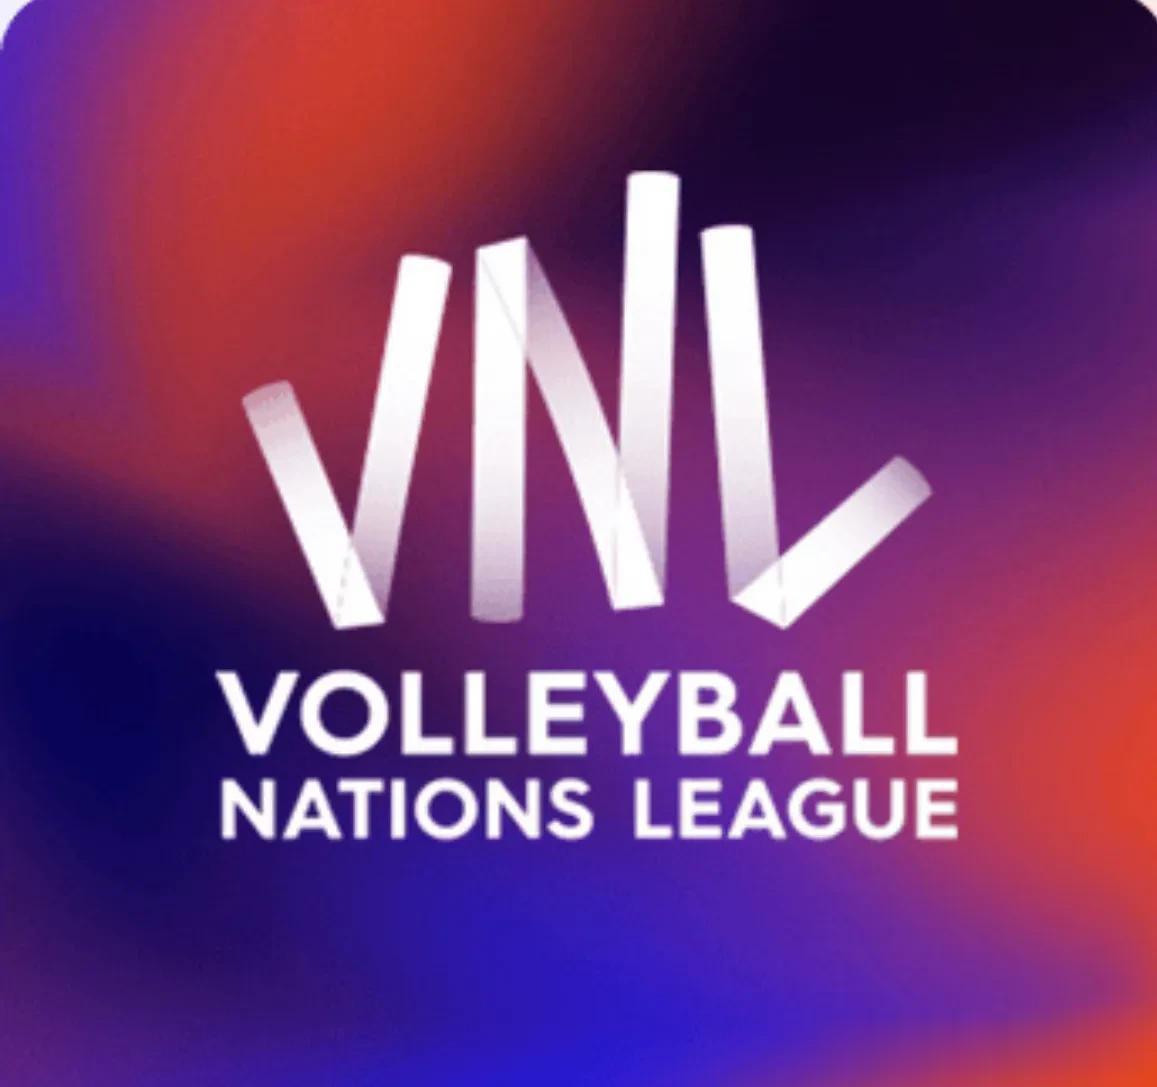  
国际排联icon为2023年VNL世界排球联赛，
提供总计750万美元的奖金